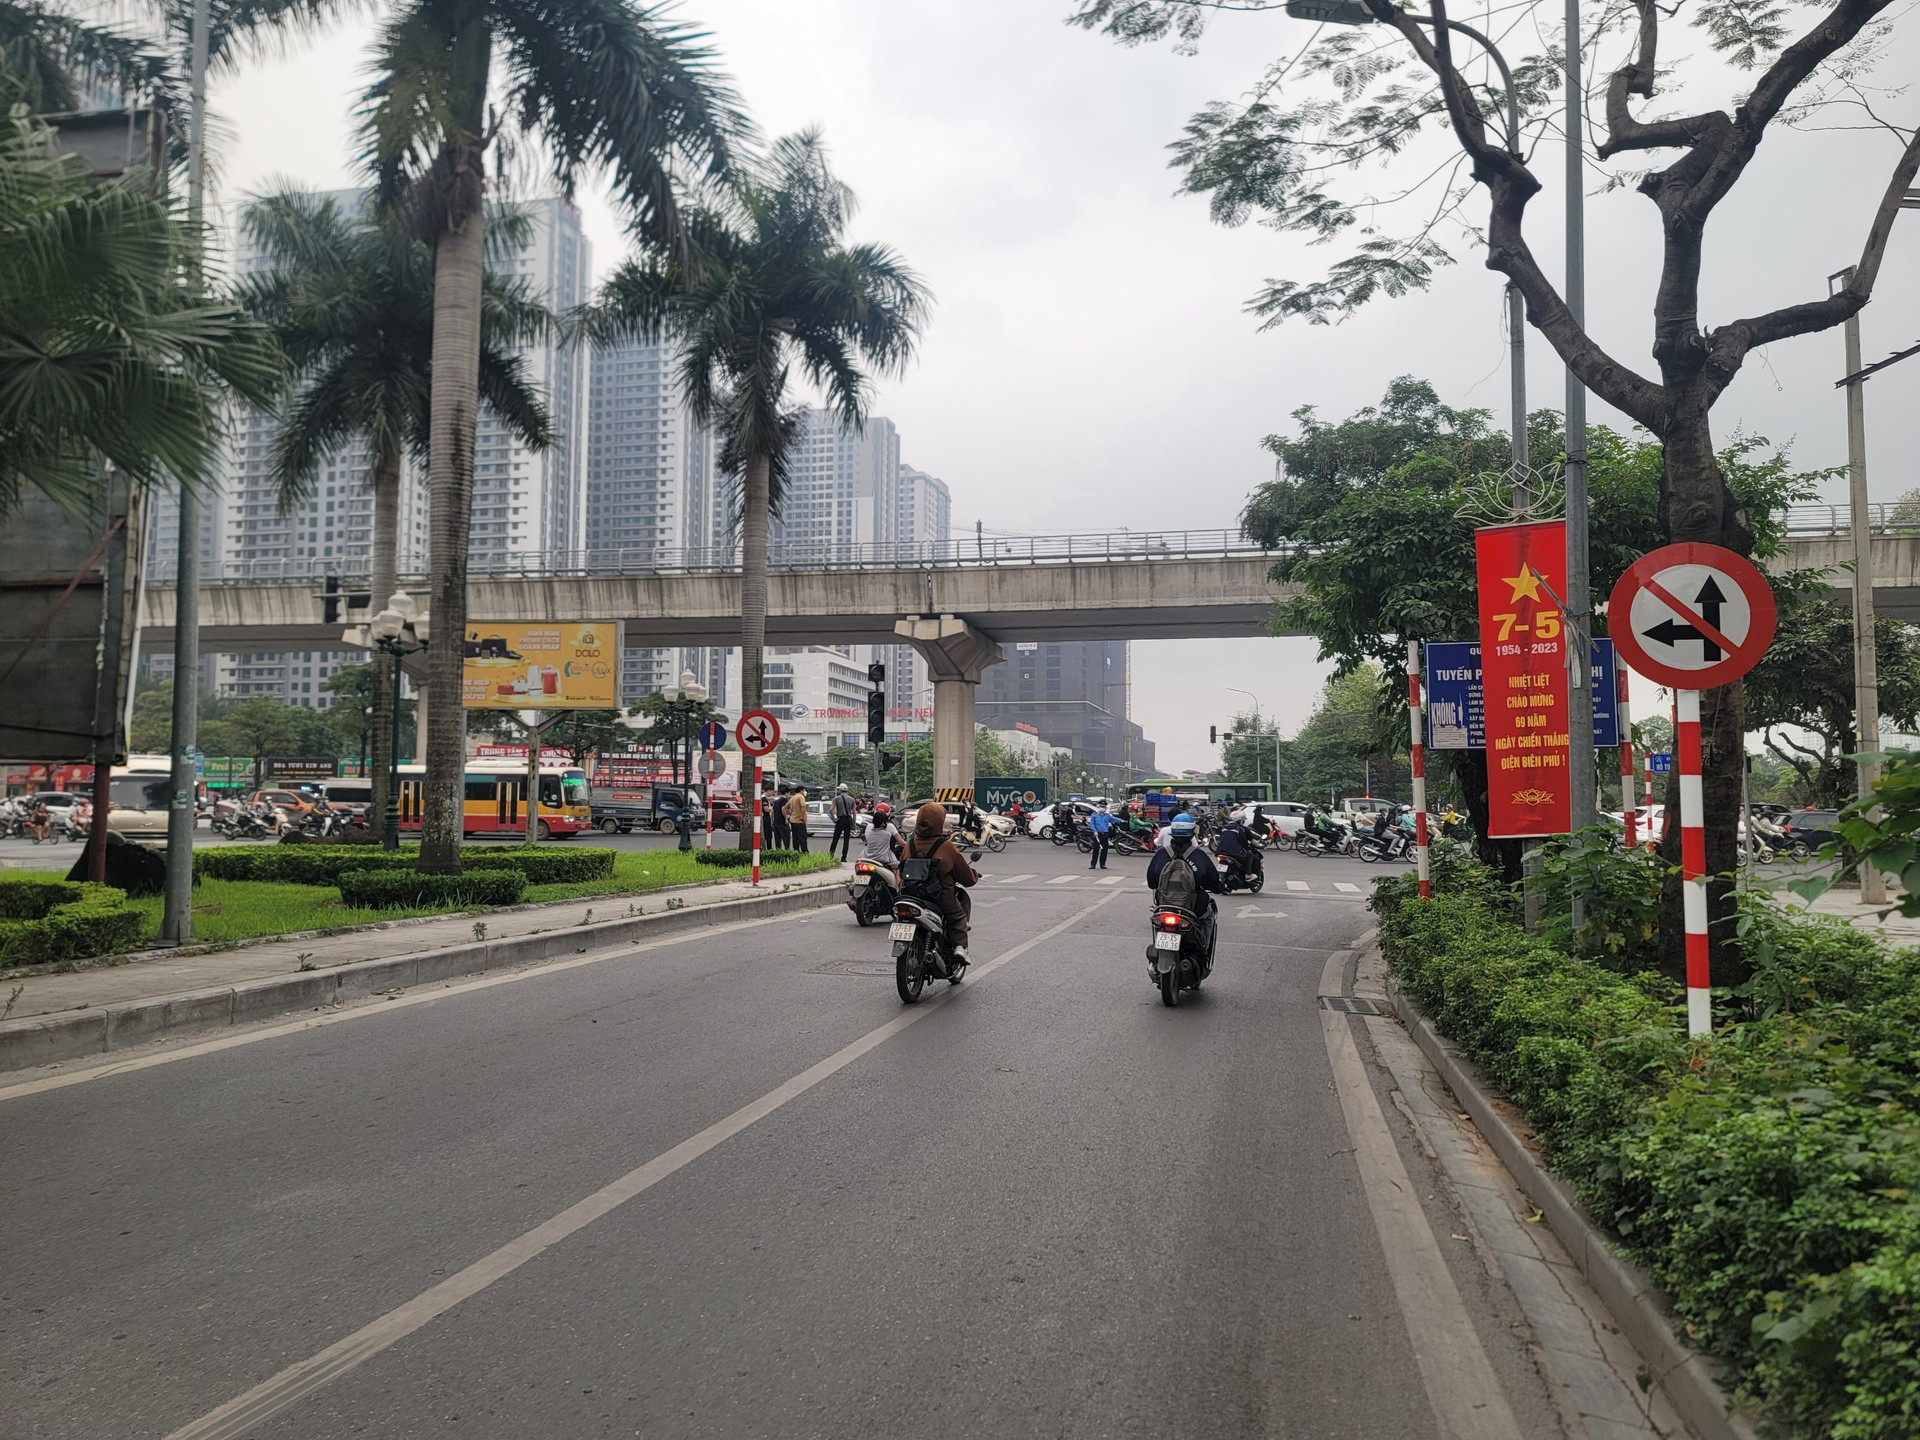 Biển cấm rẽ trái, đi thẳng được cắm cuối đường Nguyễn Cơ Thạch.